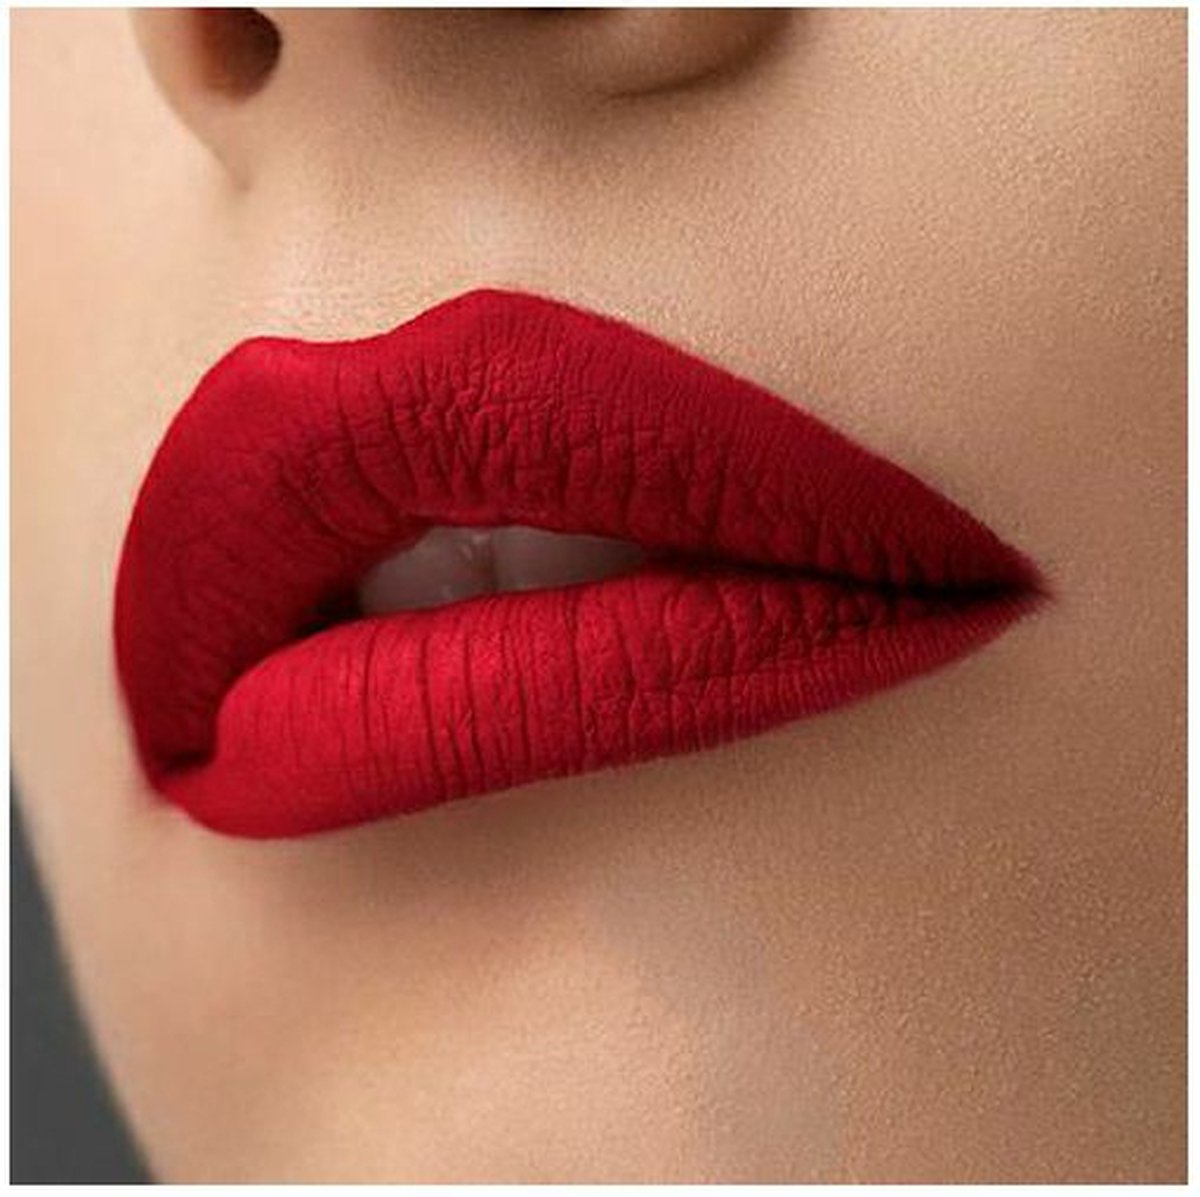 Tinktura - Roxanne - Vloeibare Matte Lippenstift - Donkerrode kleur - Kissproof Matte Liquid Lipstick - Vegan - Parabeenvrij - Natuurlijk